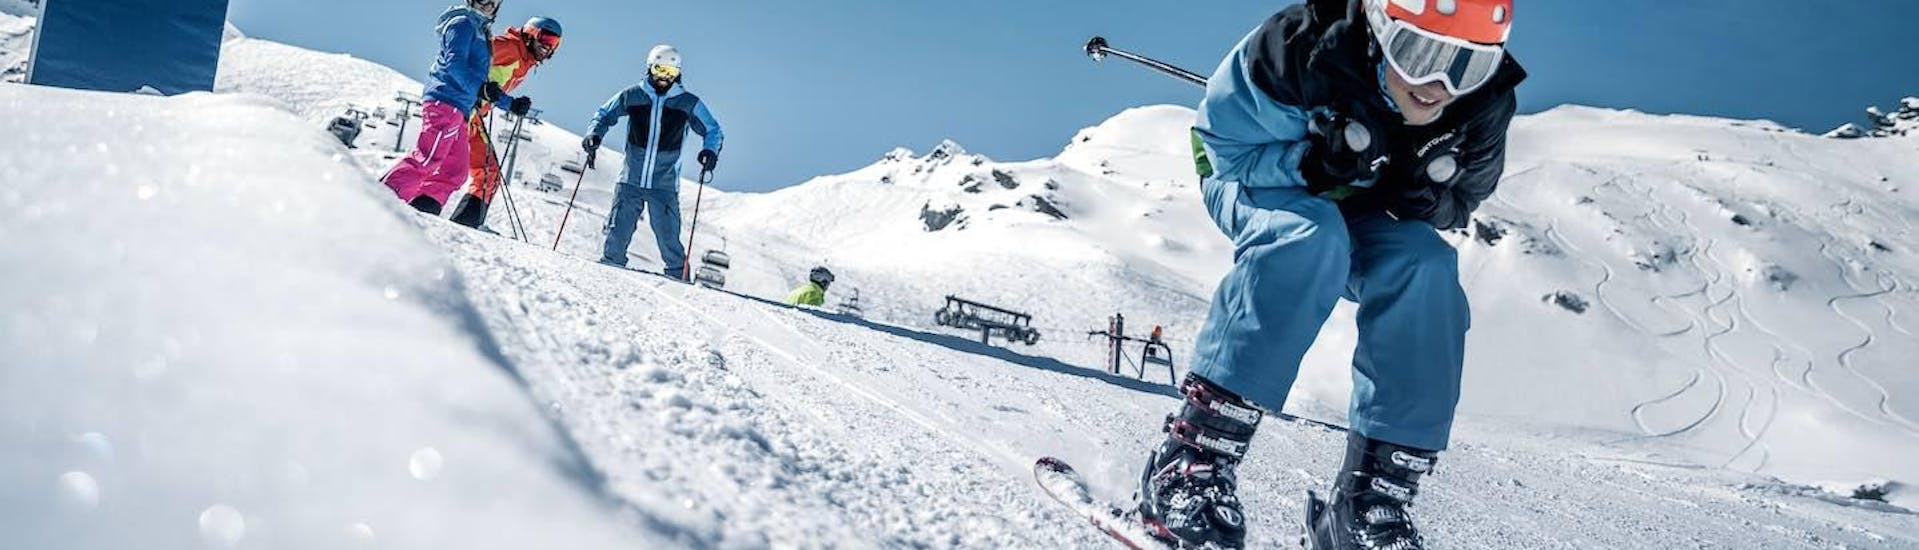 Lezioni di sci per bambini a partire da 12 anni per tutti i livelli.